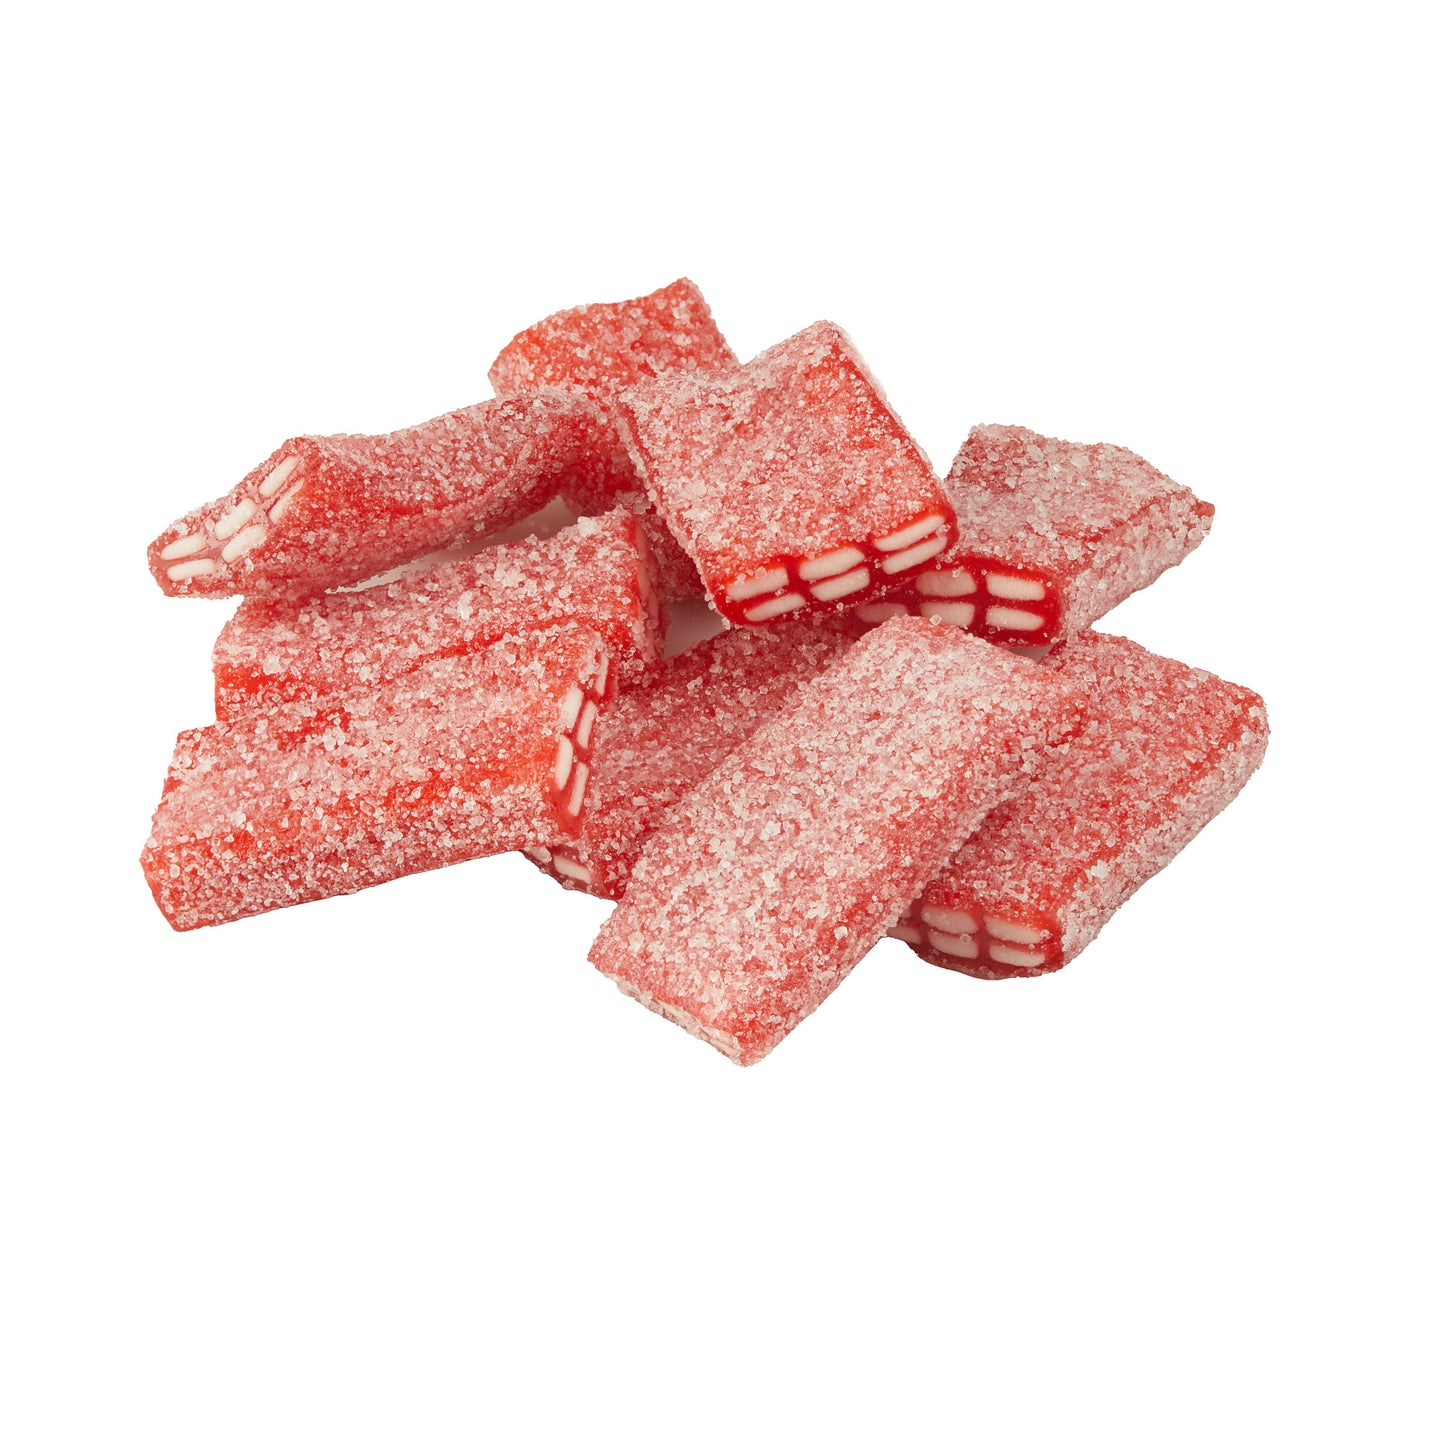 Strawberry Fizzy Bricks